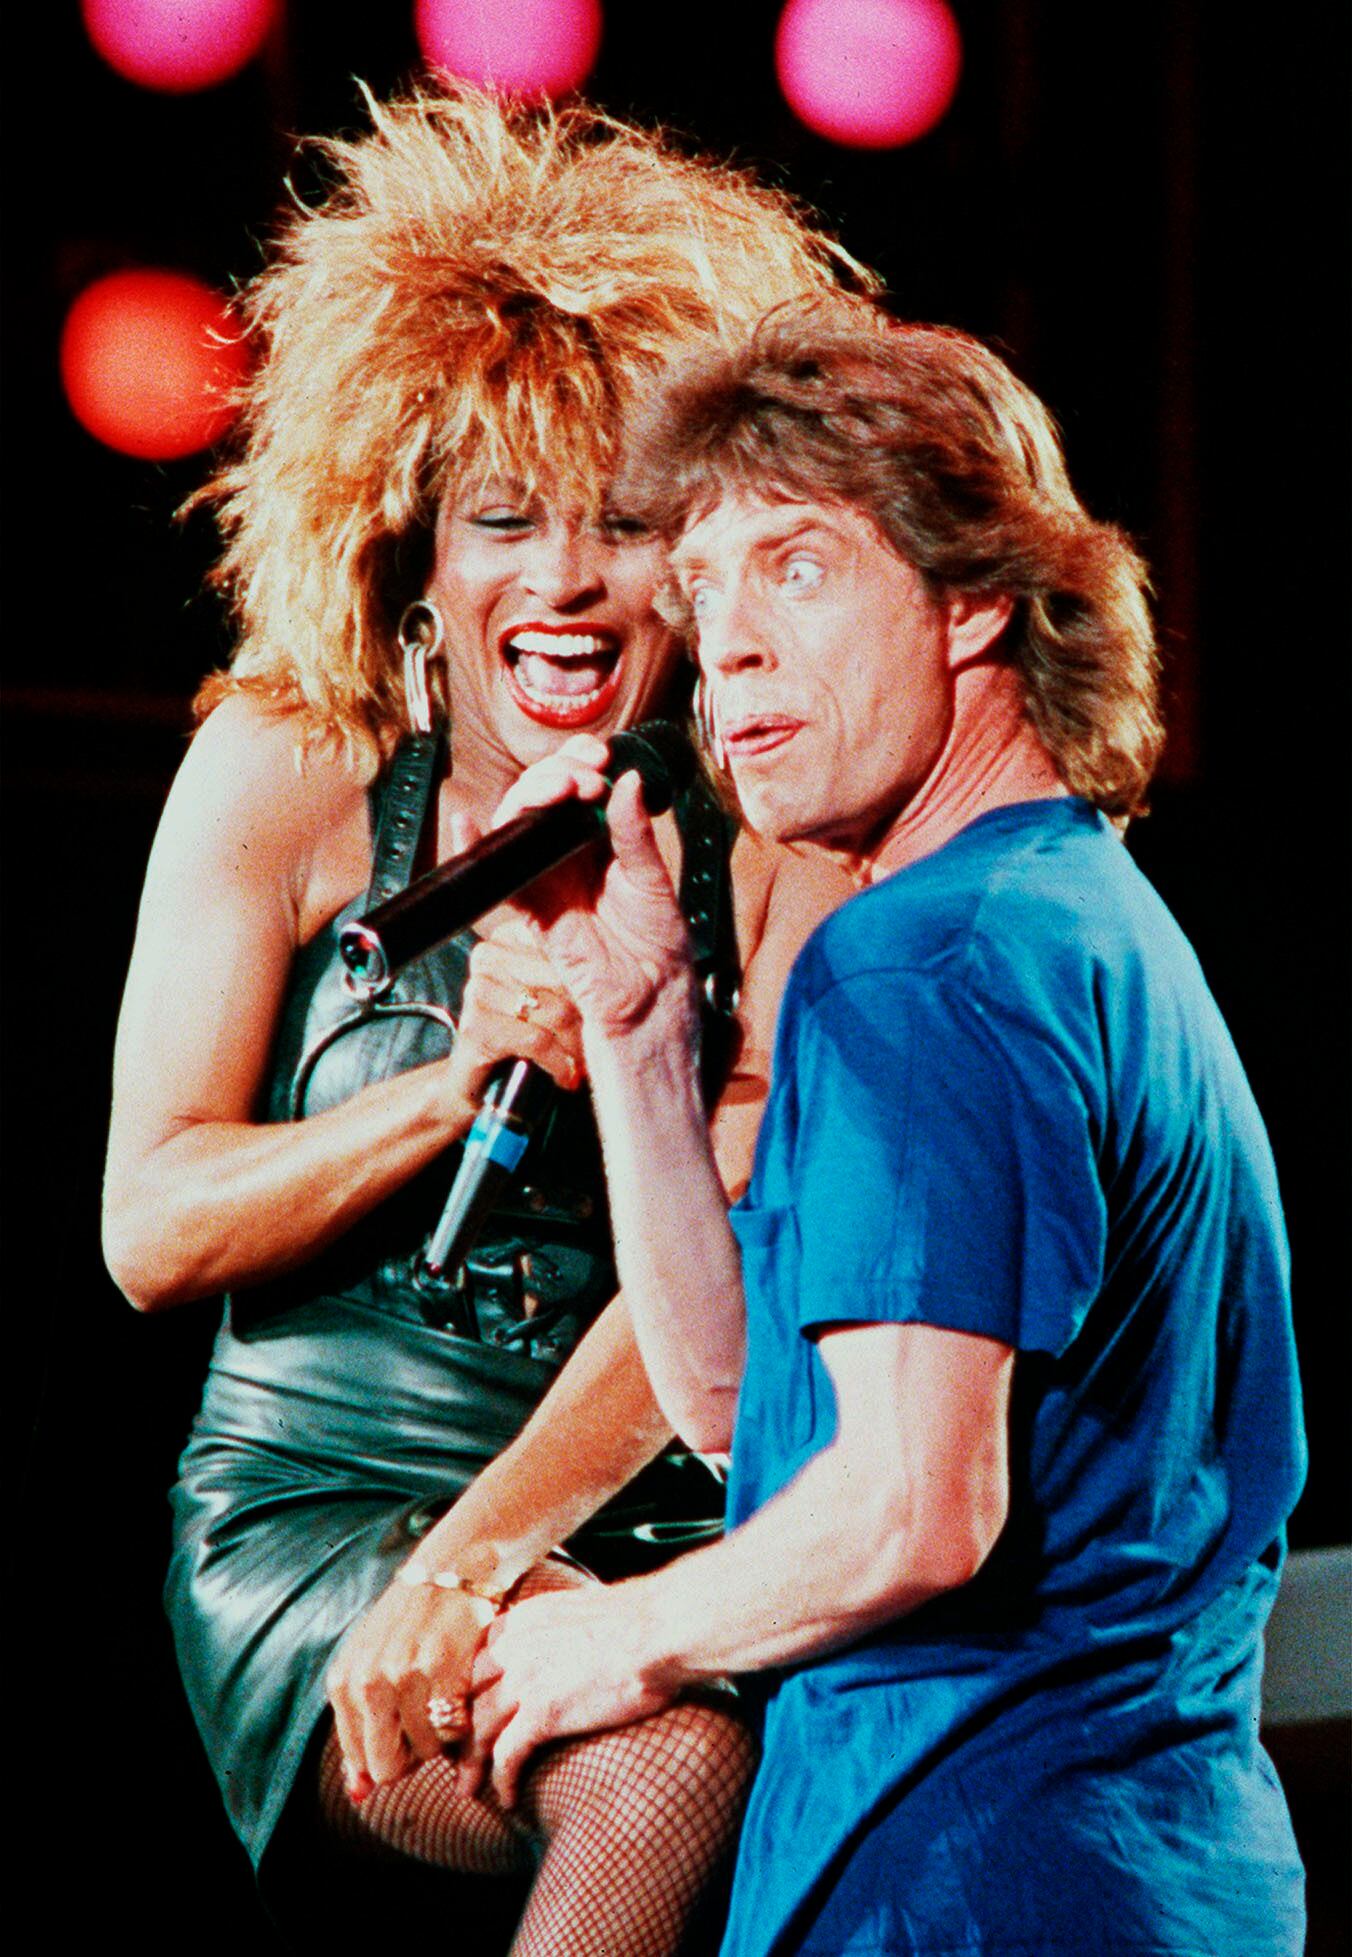 ARCHIVO - Tina Turner y Mick Jagger durante su presentación en el concierto Live Aid el sábado por la noche en Filadelfia el 13 de julio de 1995. Turner, la imparable cantante, murió el martes después de una larga enfermedad en su casa en Küsnacht, cerca de Zúrich, Suiza, dijo su mánager. Tenía 83 años. (Foto AP/Amy Sancetta, archivo)